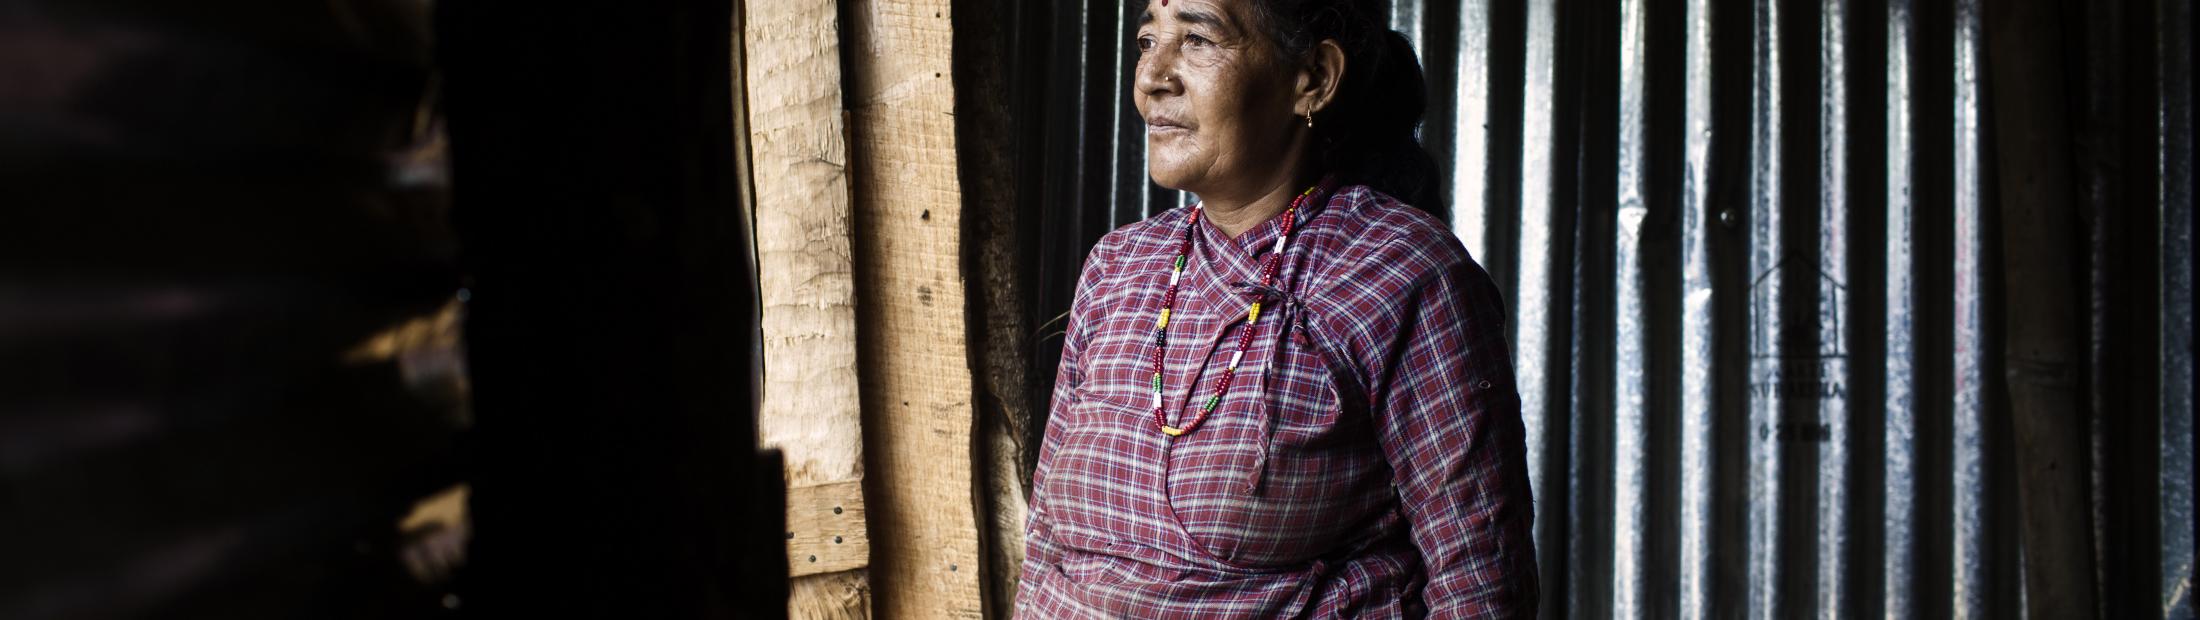 Entrevista a Diego Ibarra, fotógrafo que ha acompañado a ACNUR tras el terremoto de Nepal